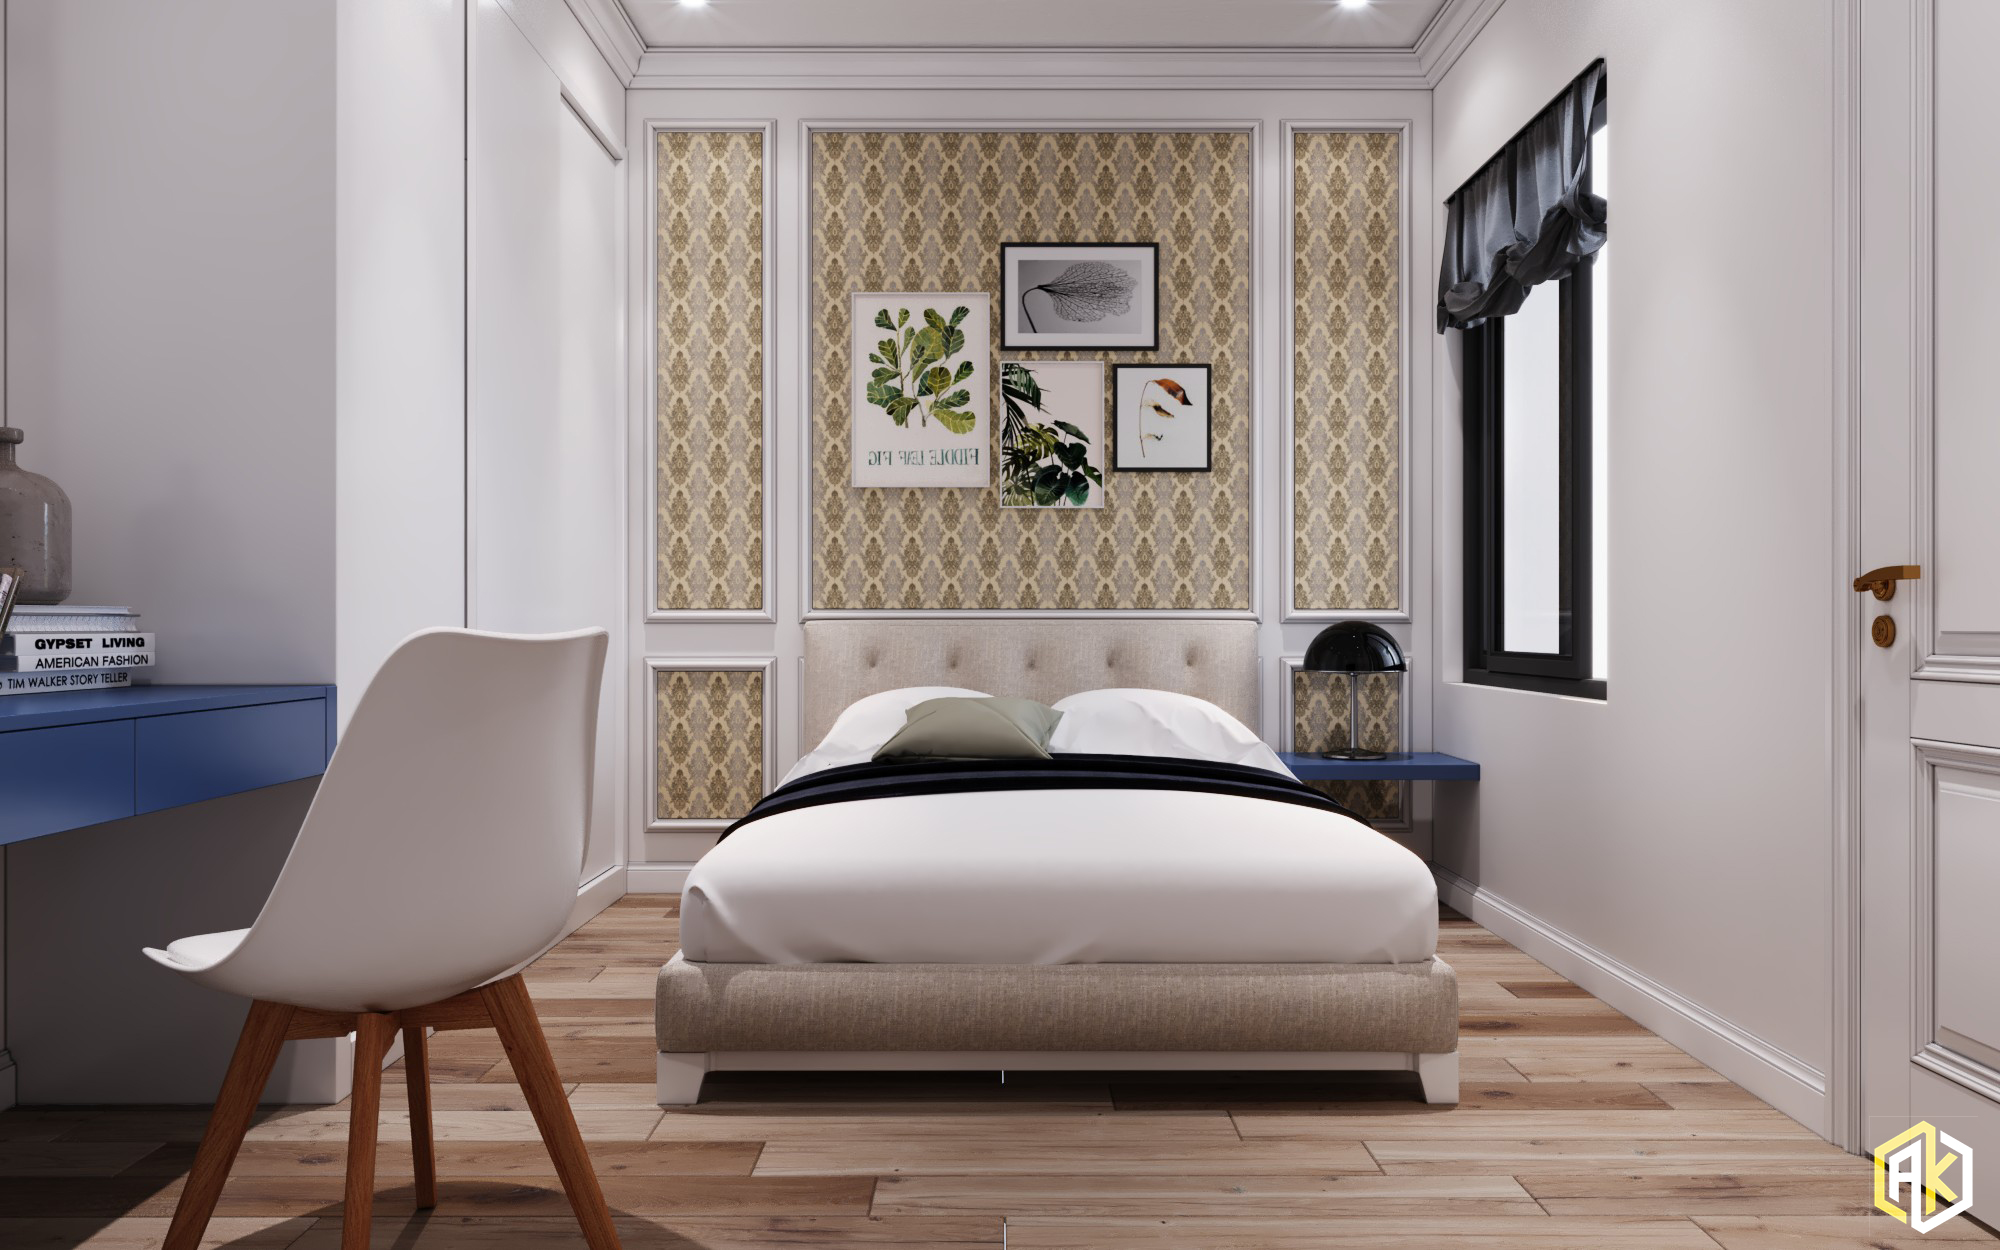 hình minh hoa thiết kế nội thất chung cư 2 phòng ngủ với cách sắp xếp khoa học thông minh